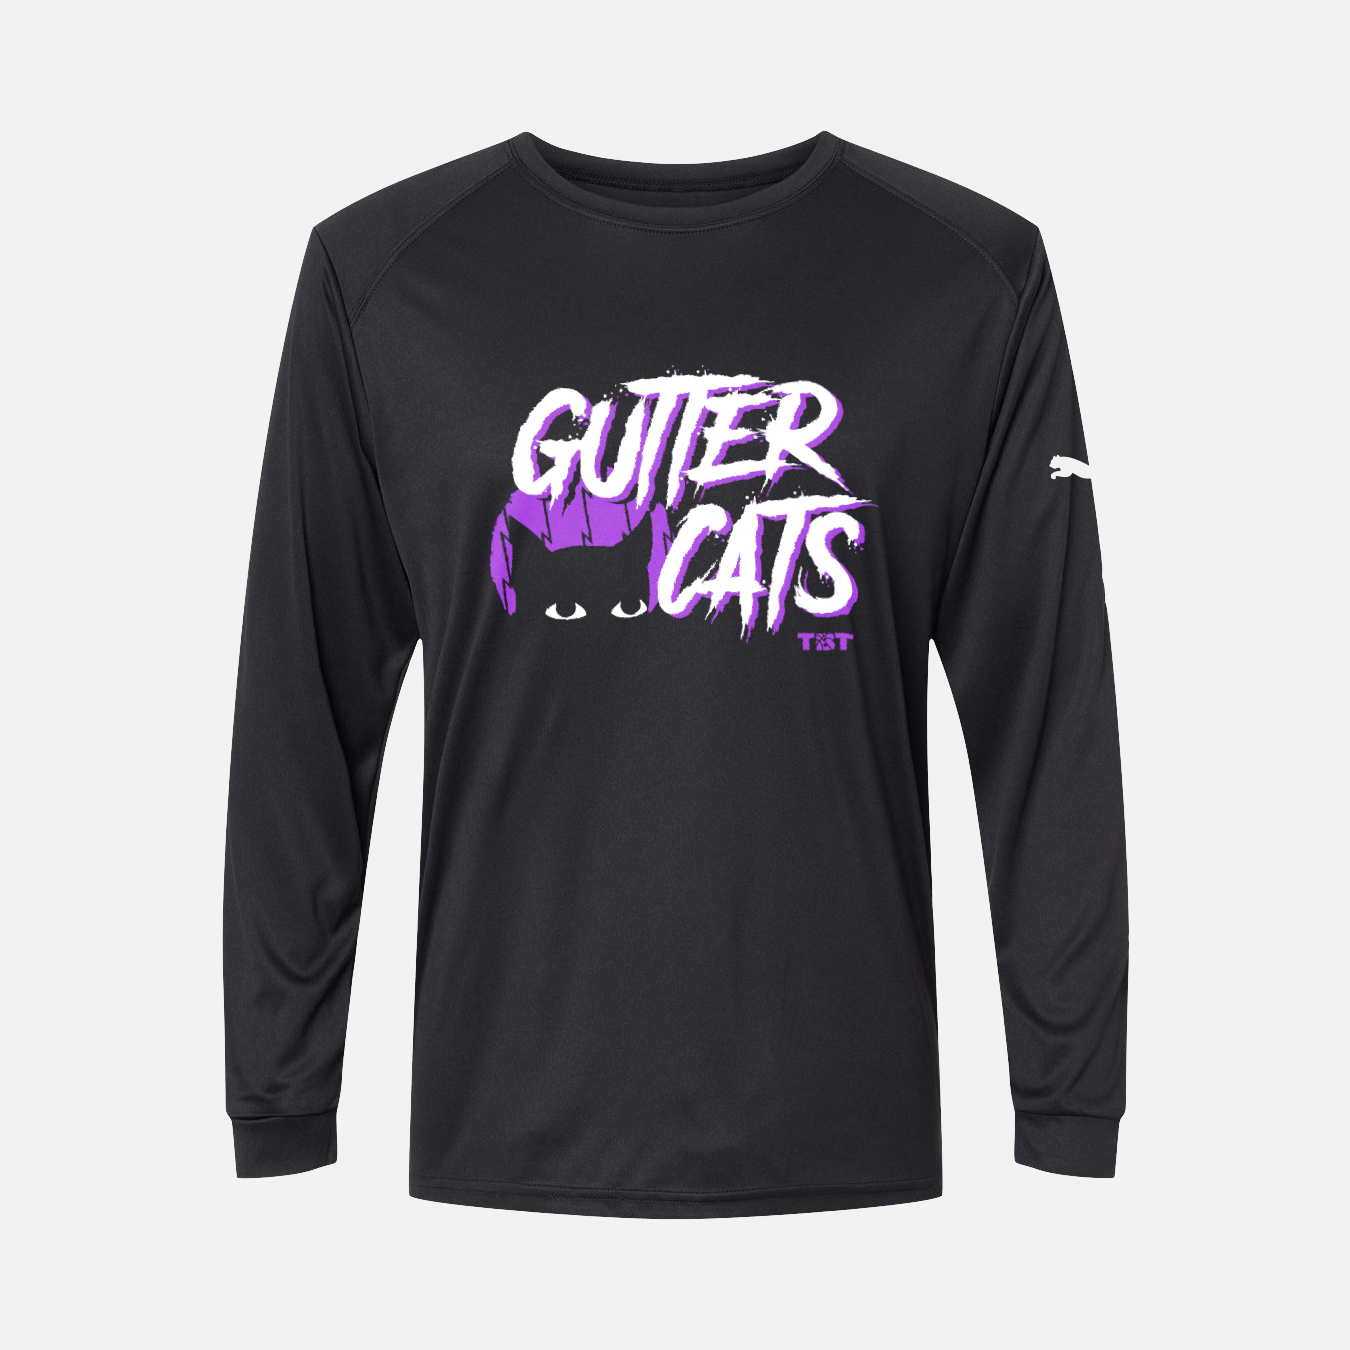 TBT TEAM GUTTER CATS Warm-up Shirt